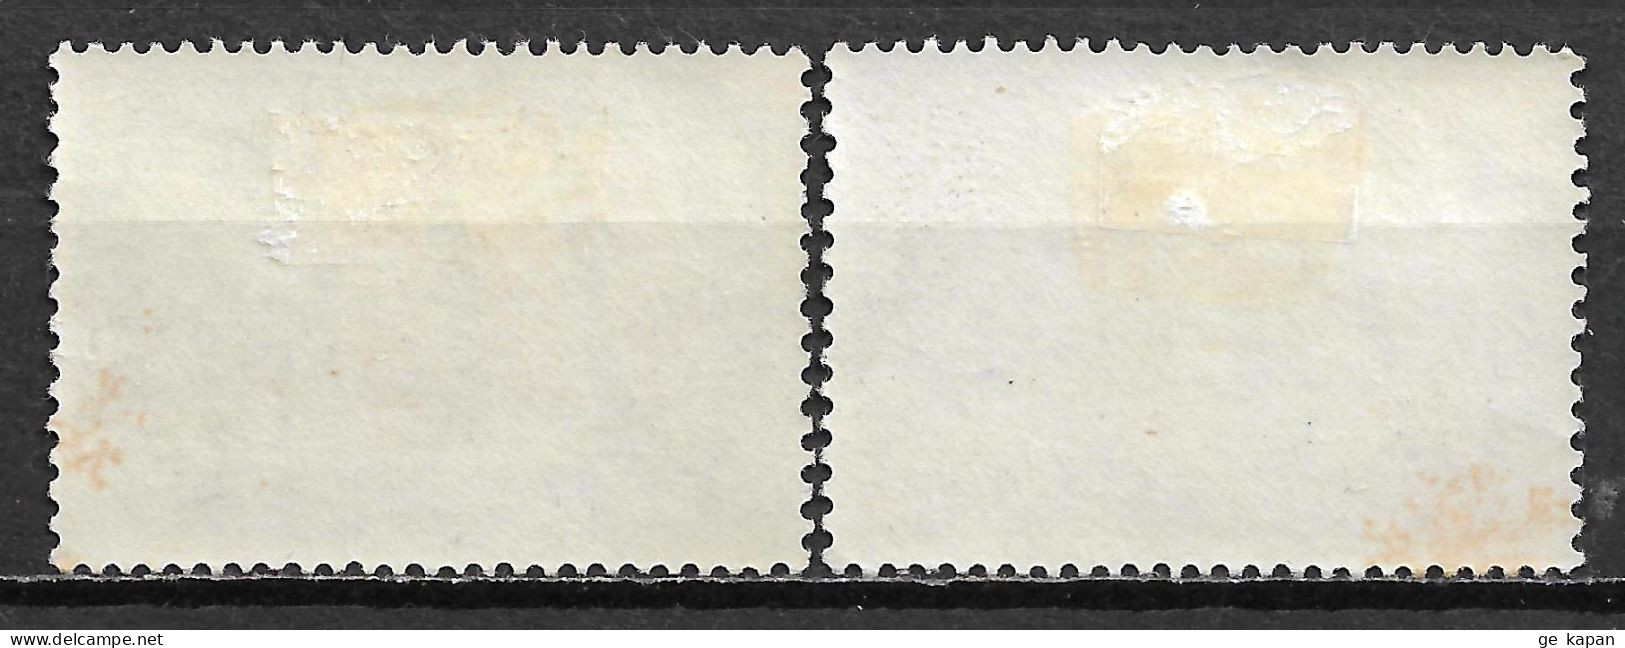 1963 NETHERLANDS Complete Set Of 2 MVLH STAMPS (Michel # 791,792) CV €1.50 - Ungebraucht